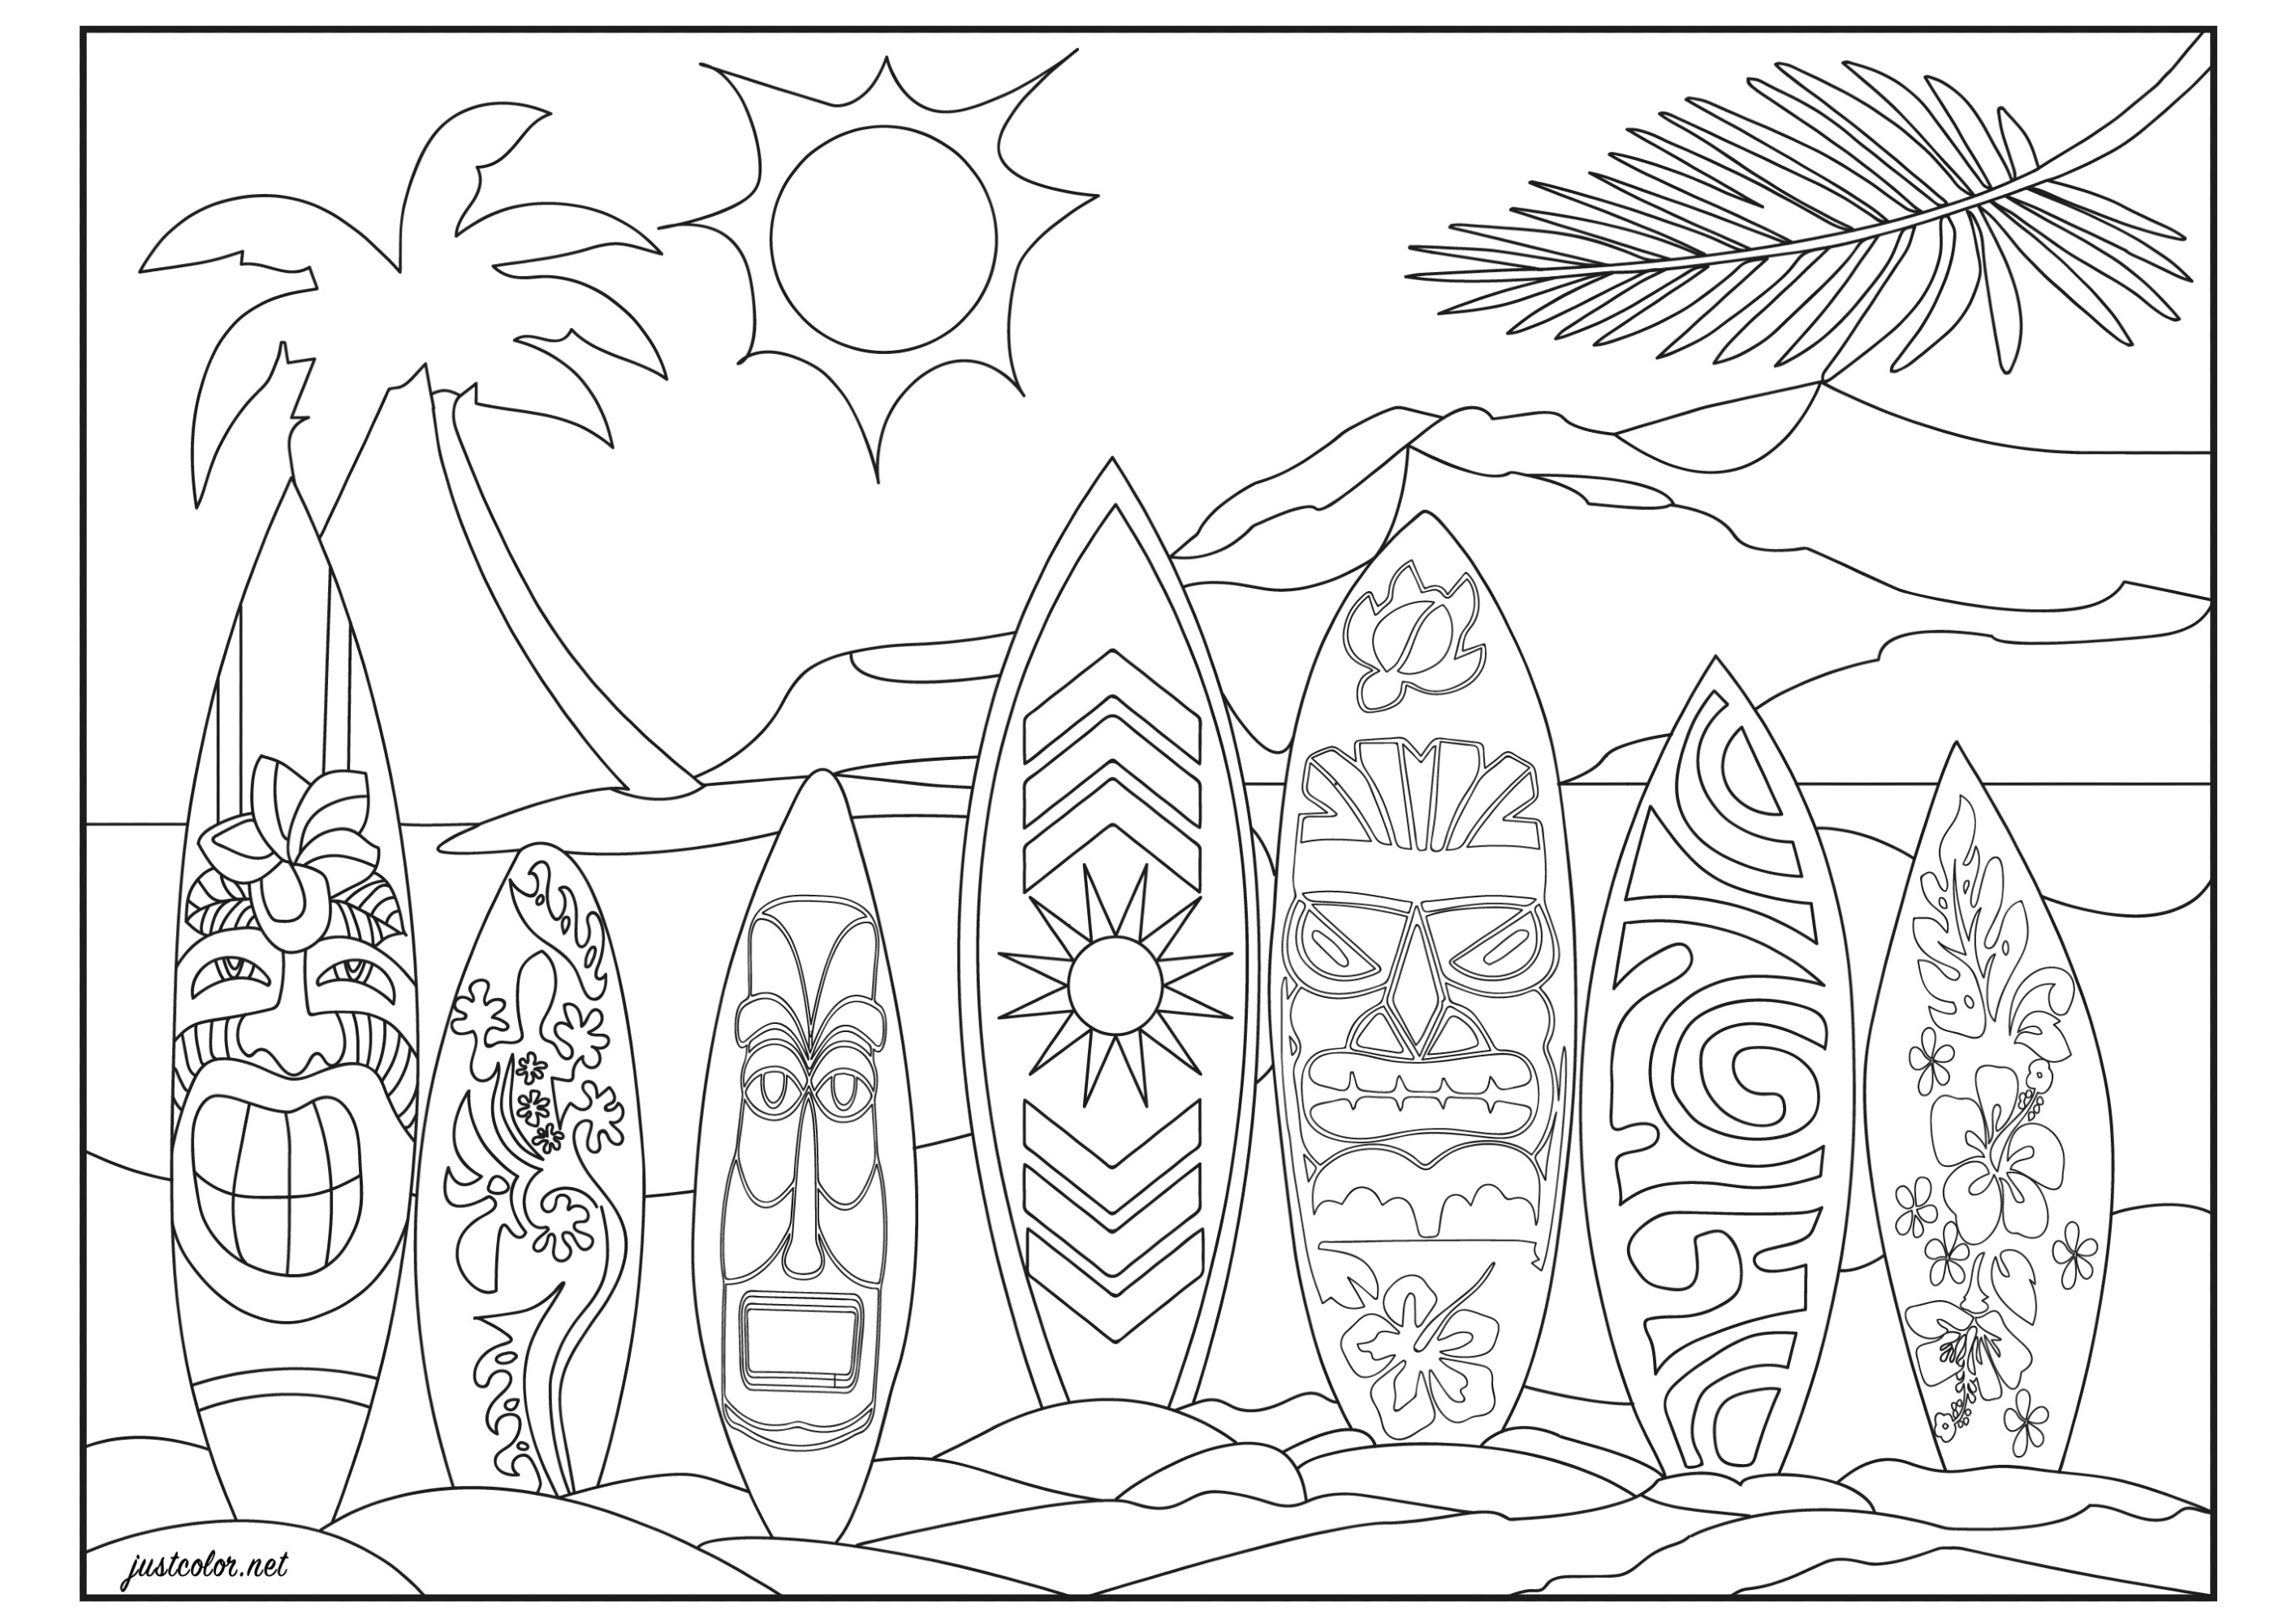 En una playa de Honolulu (Hawai, Pacífico). Alineación de tablas de surf con motivos tribales hawaianos, maoríes, vintage y florales (flores tropicales de hibisco)¿Listo para surfear la ola perfecta?Coloreado original con una montaña volcánica y un cocotero de fondo, Artista : Morgan